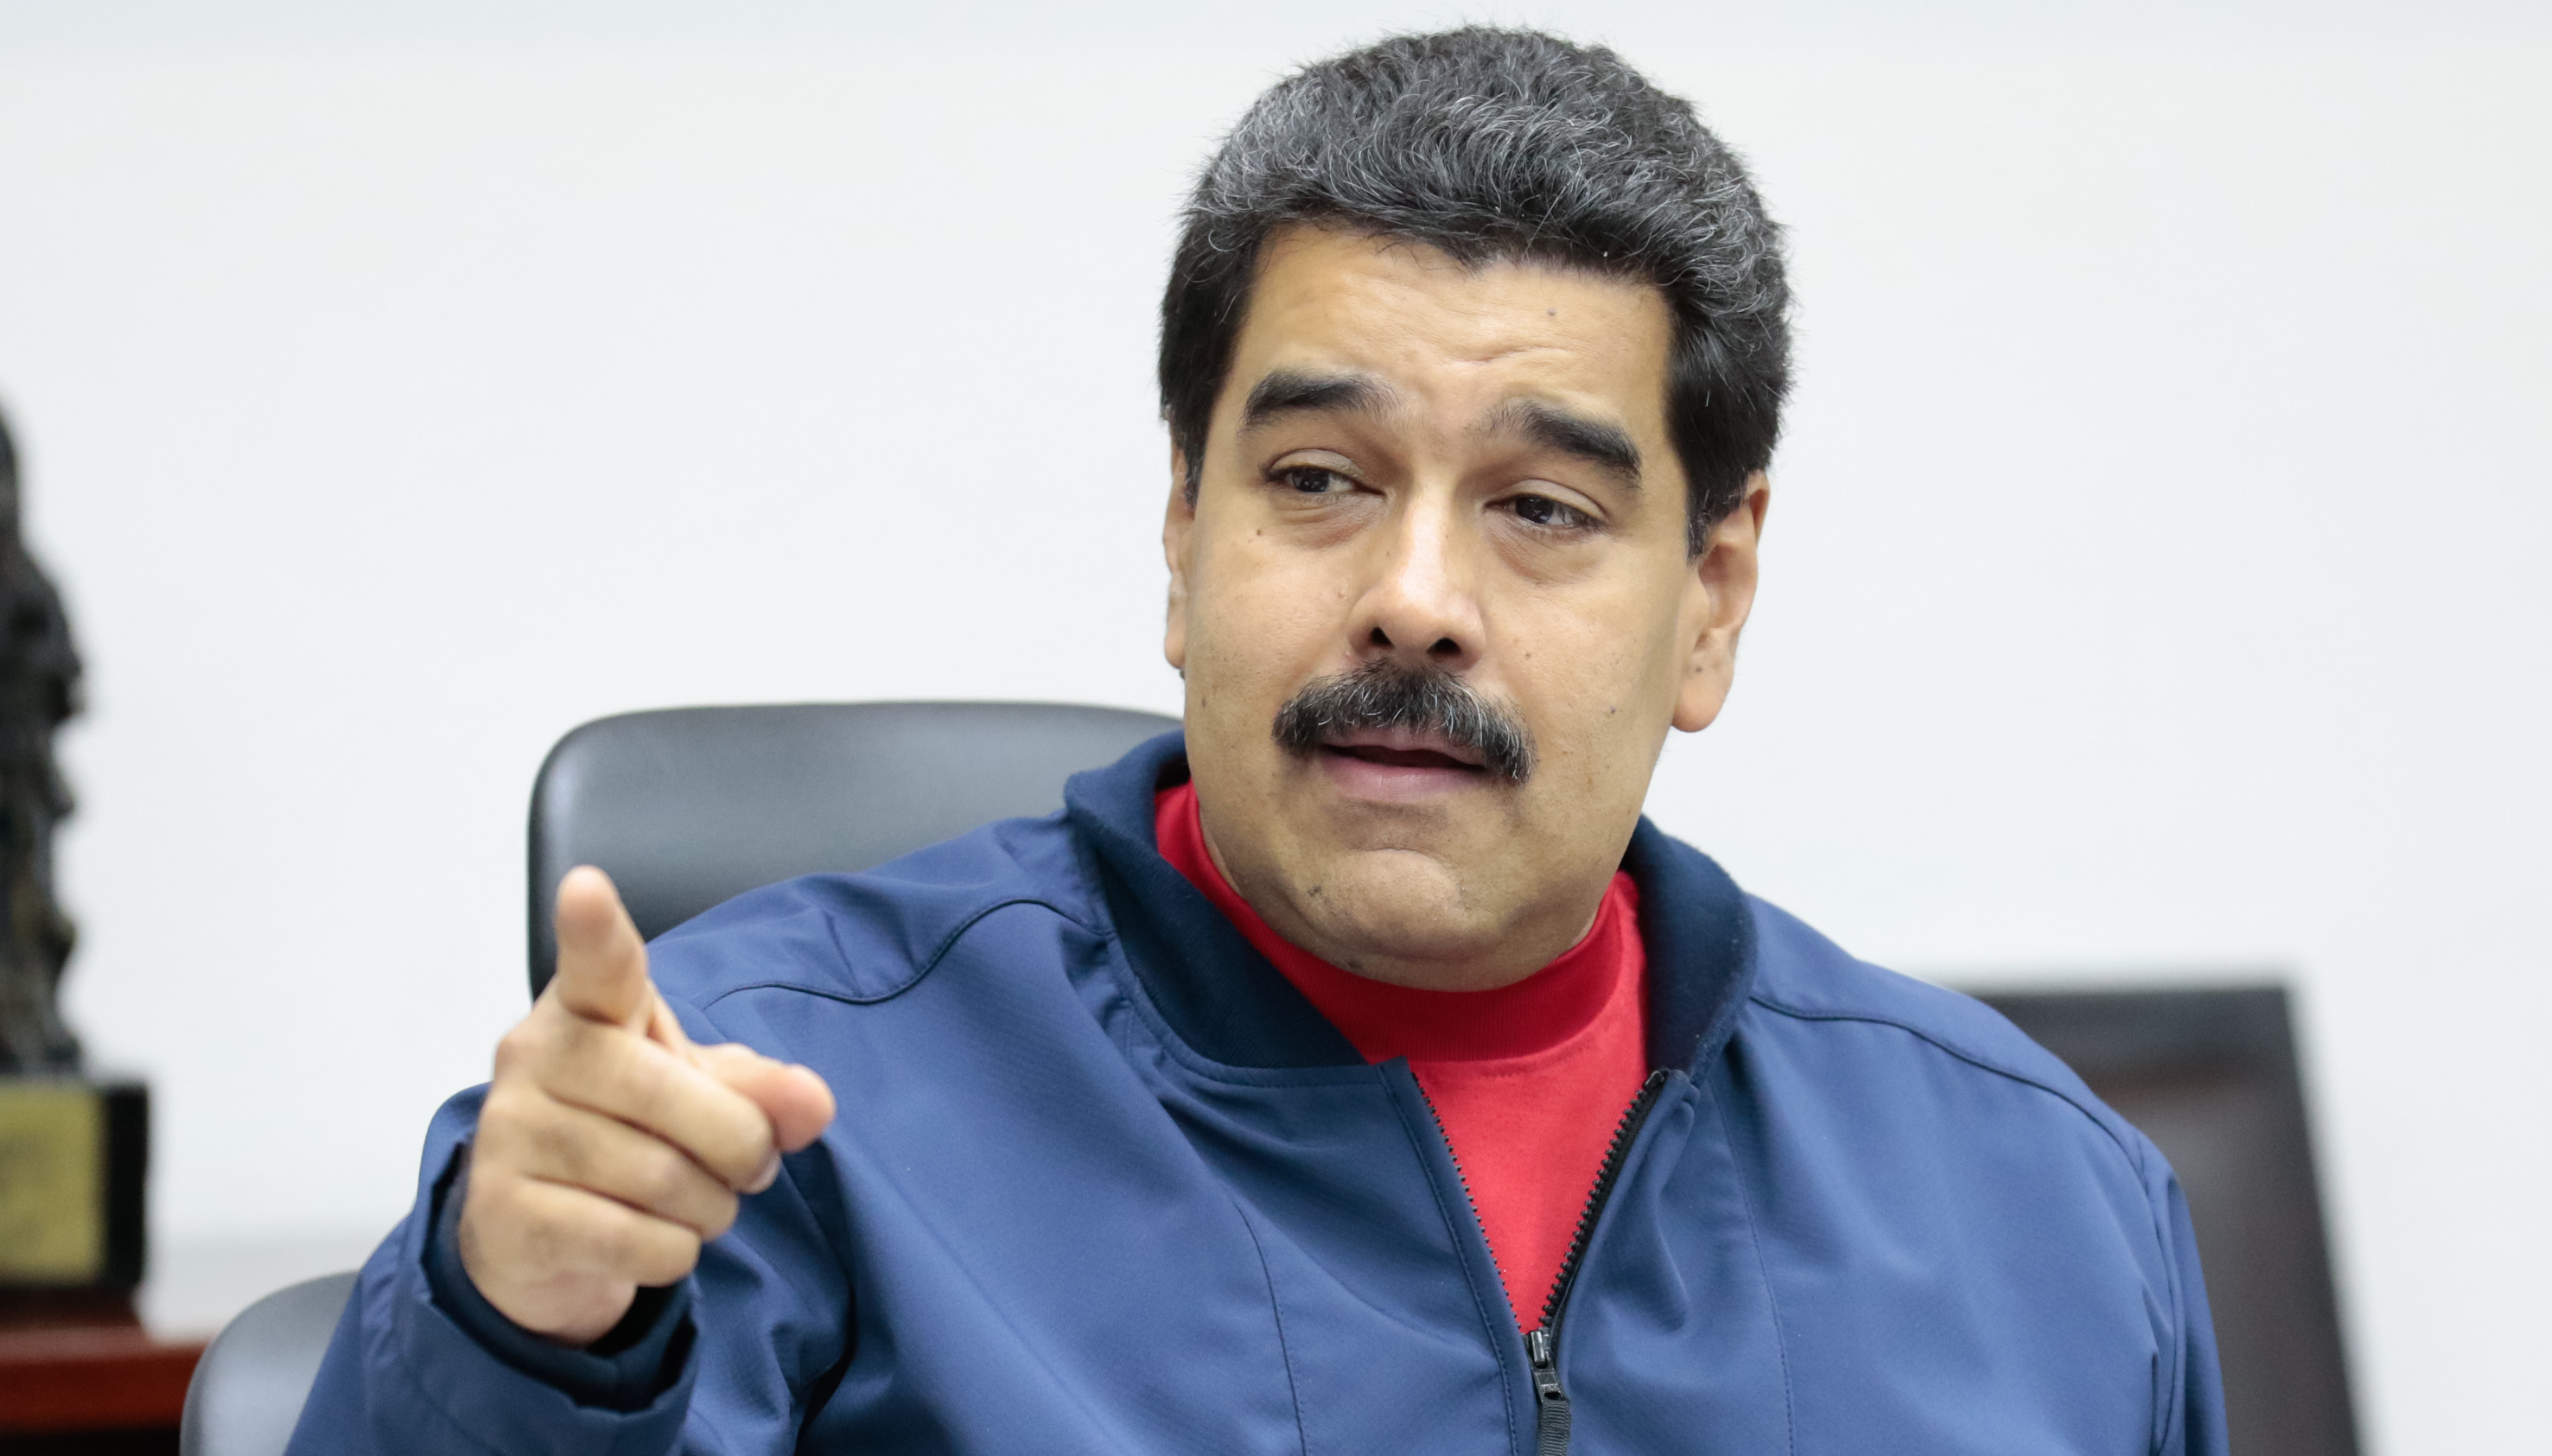 El presidente de Venezuela, Nicolás Maduro, destacó los logros en materia de inclusión durante 17 años de la Revolución Bolivariana.